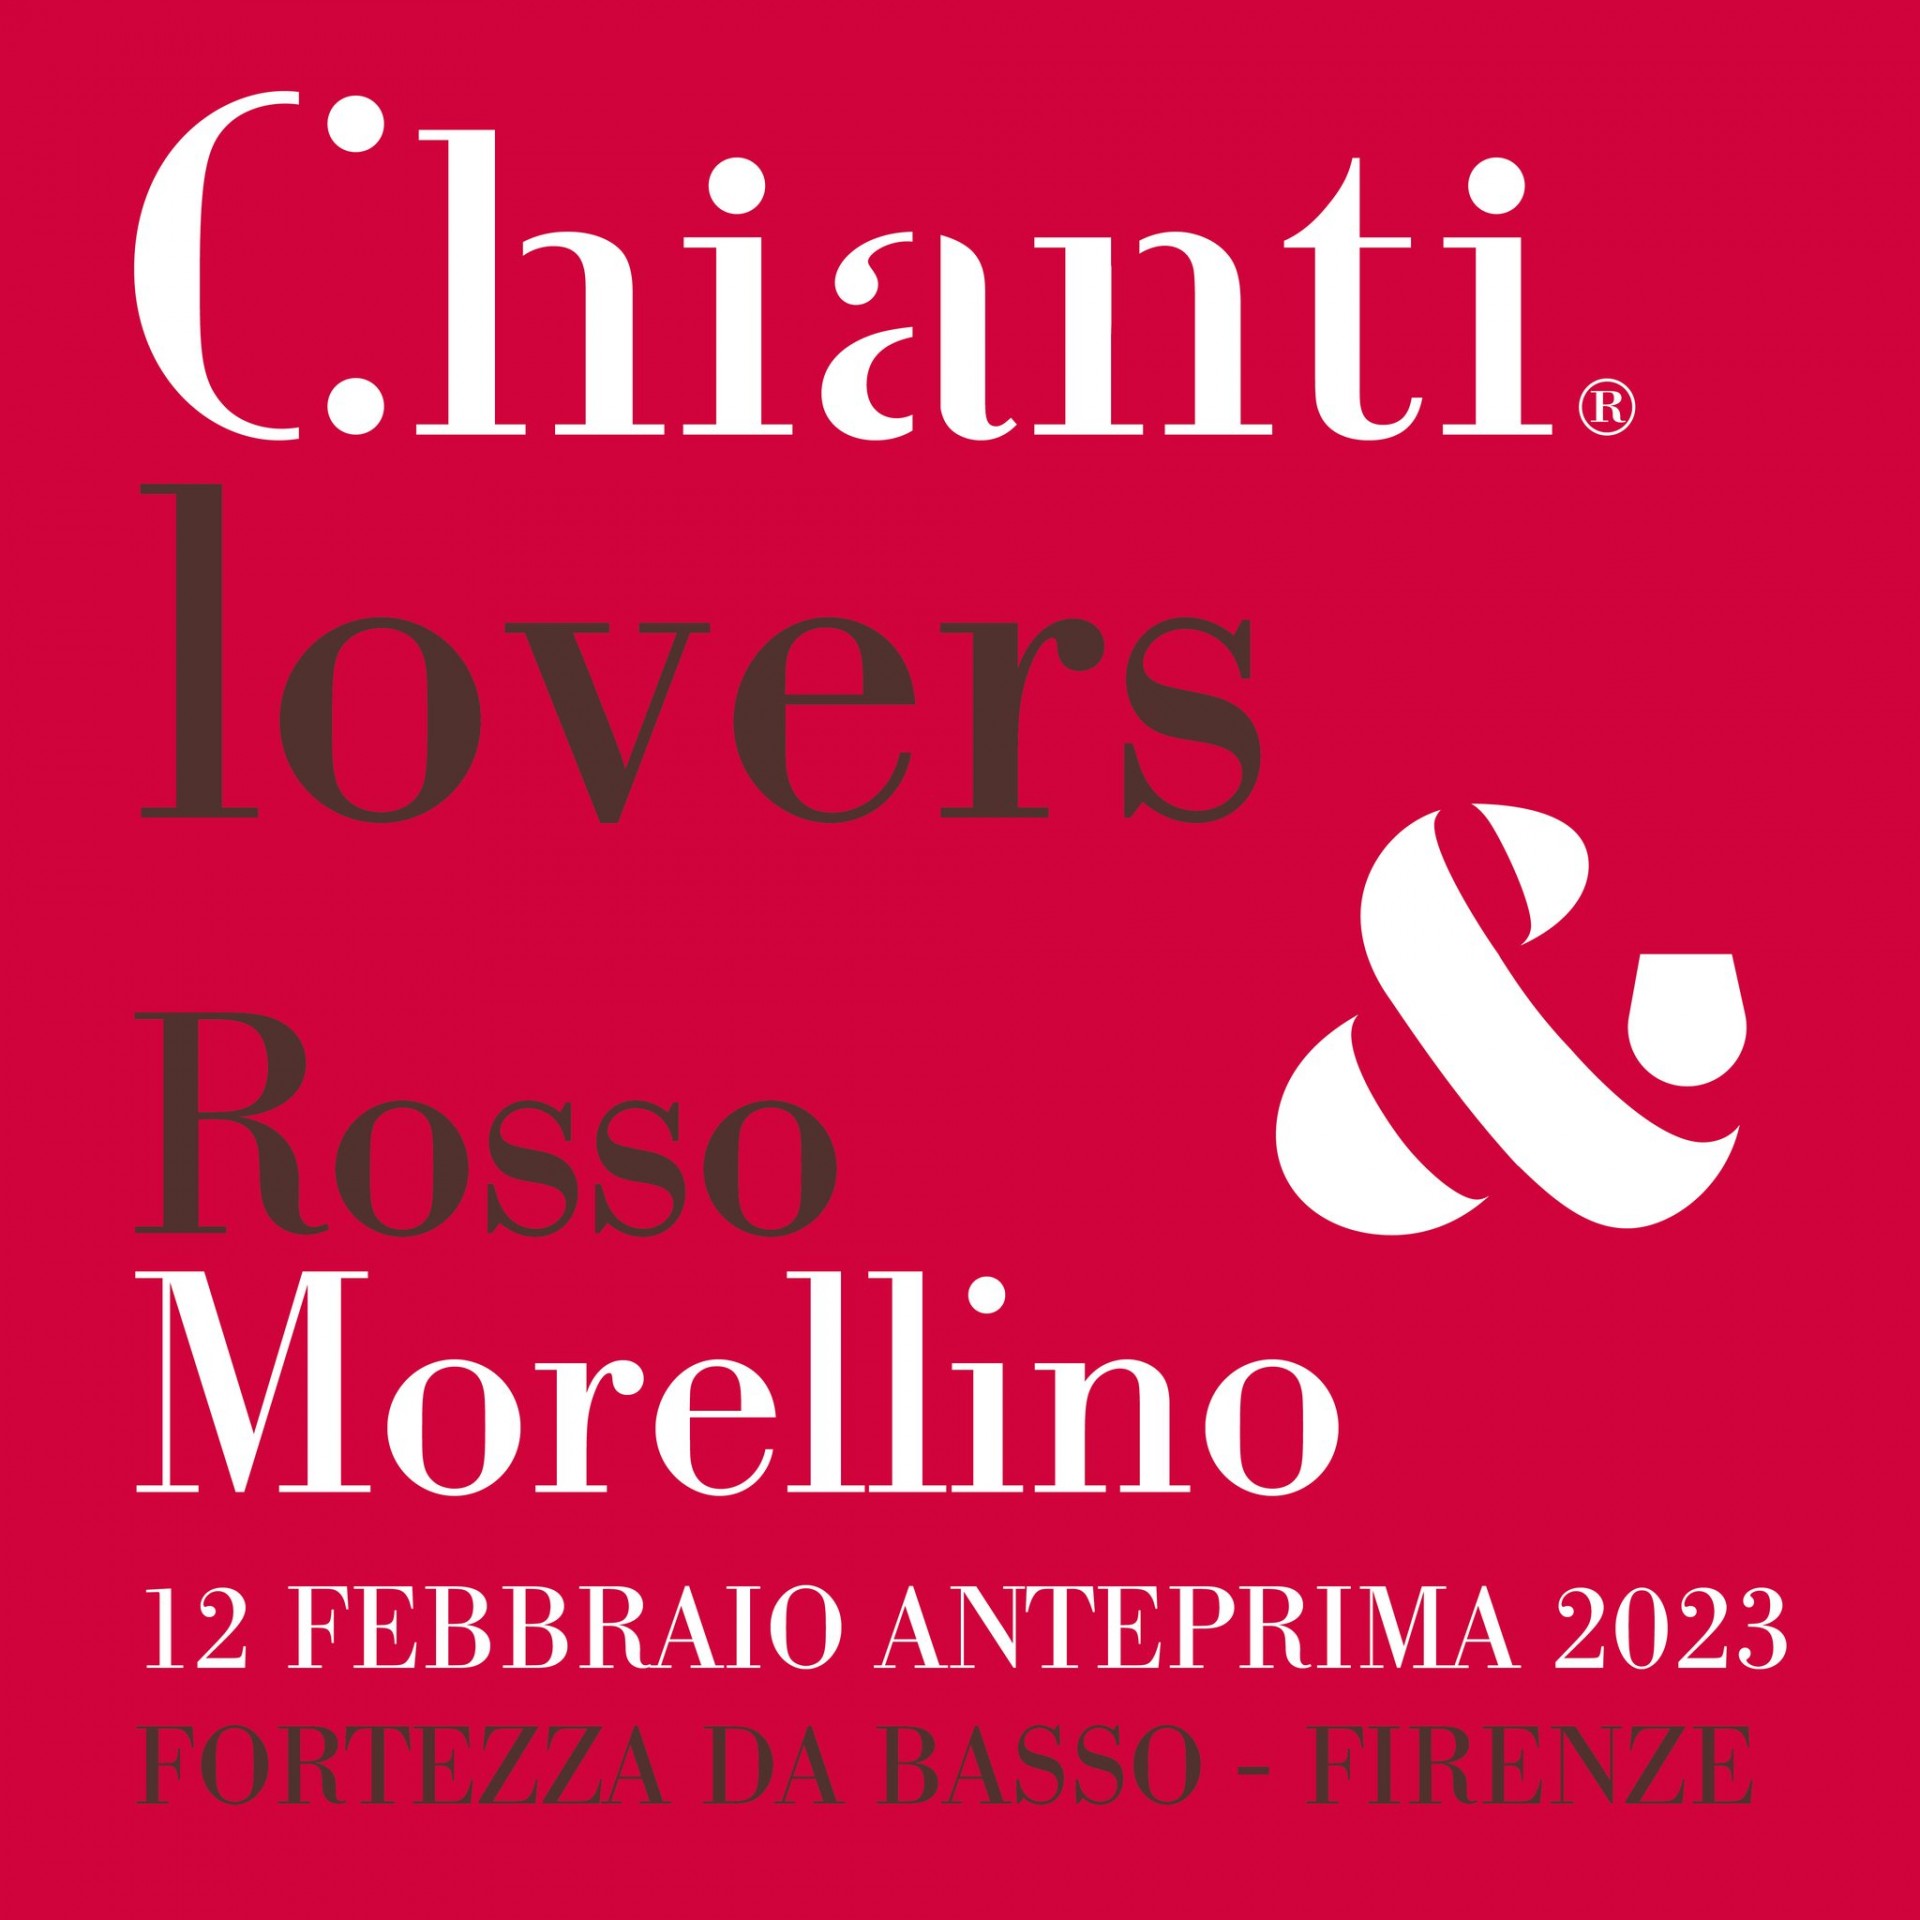 anteprima-chianti-lovers-rosso-morellino